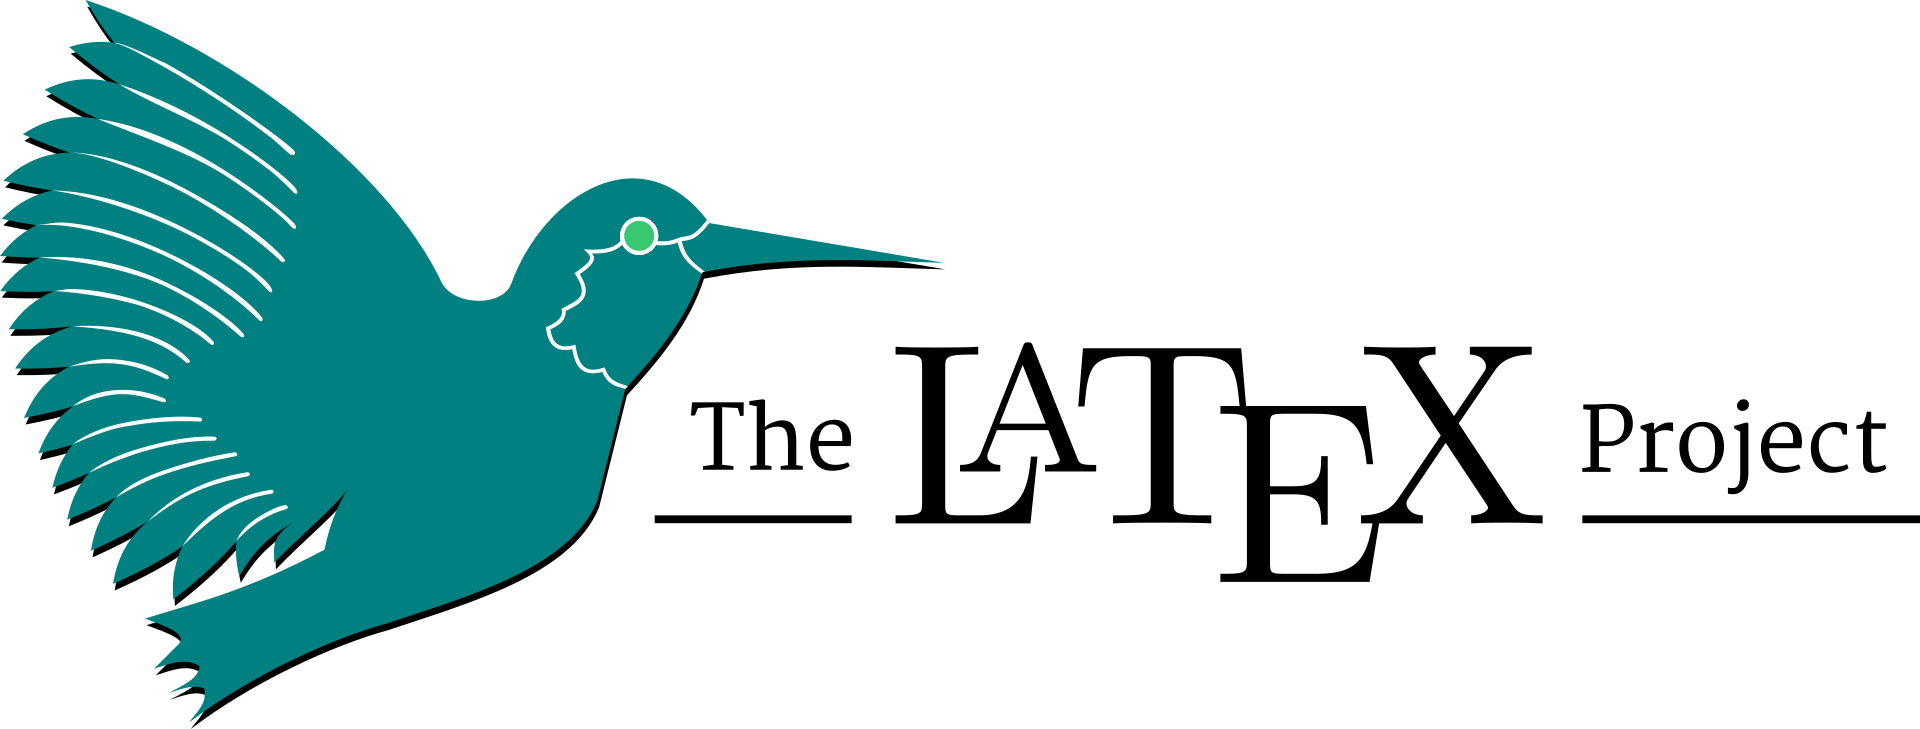 Vorteile von LaTeX